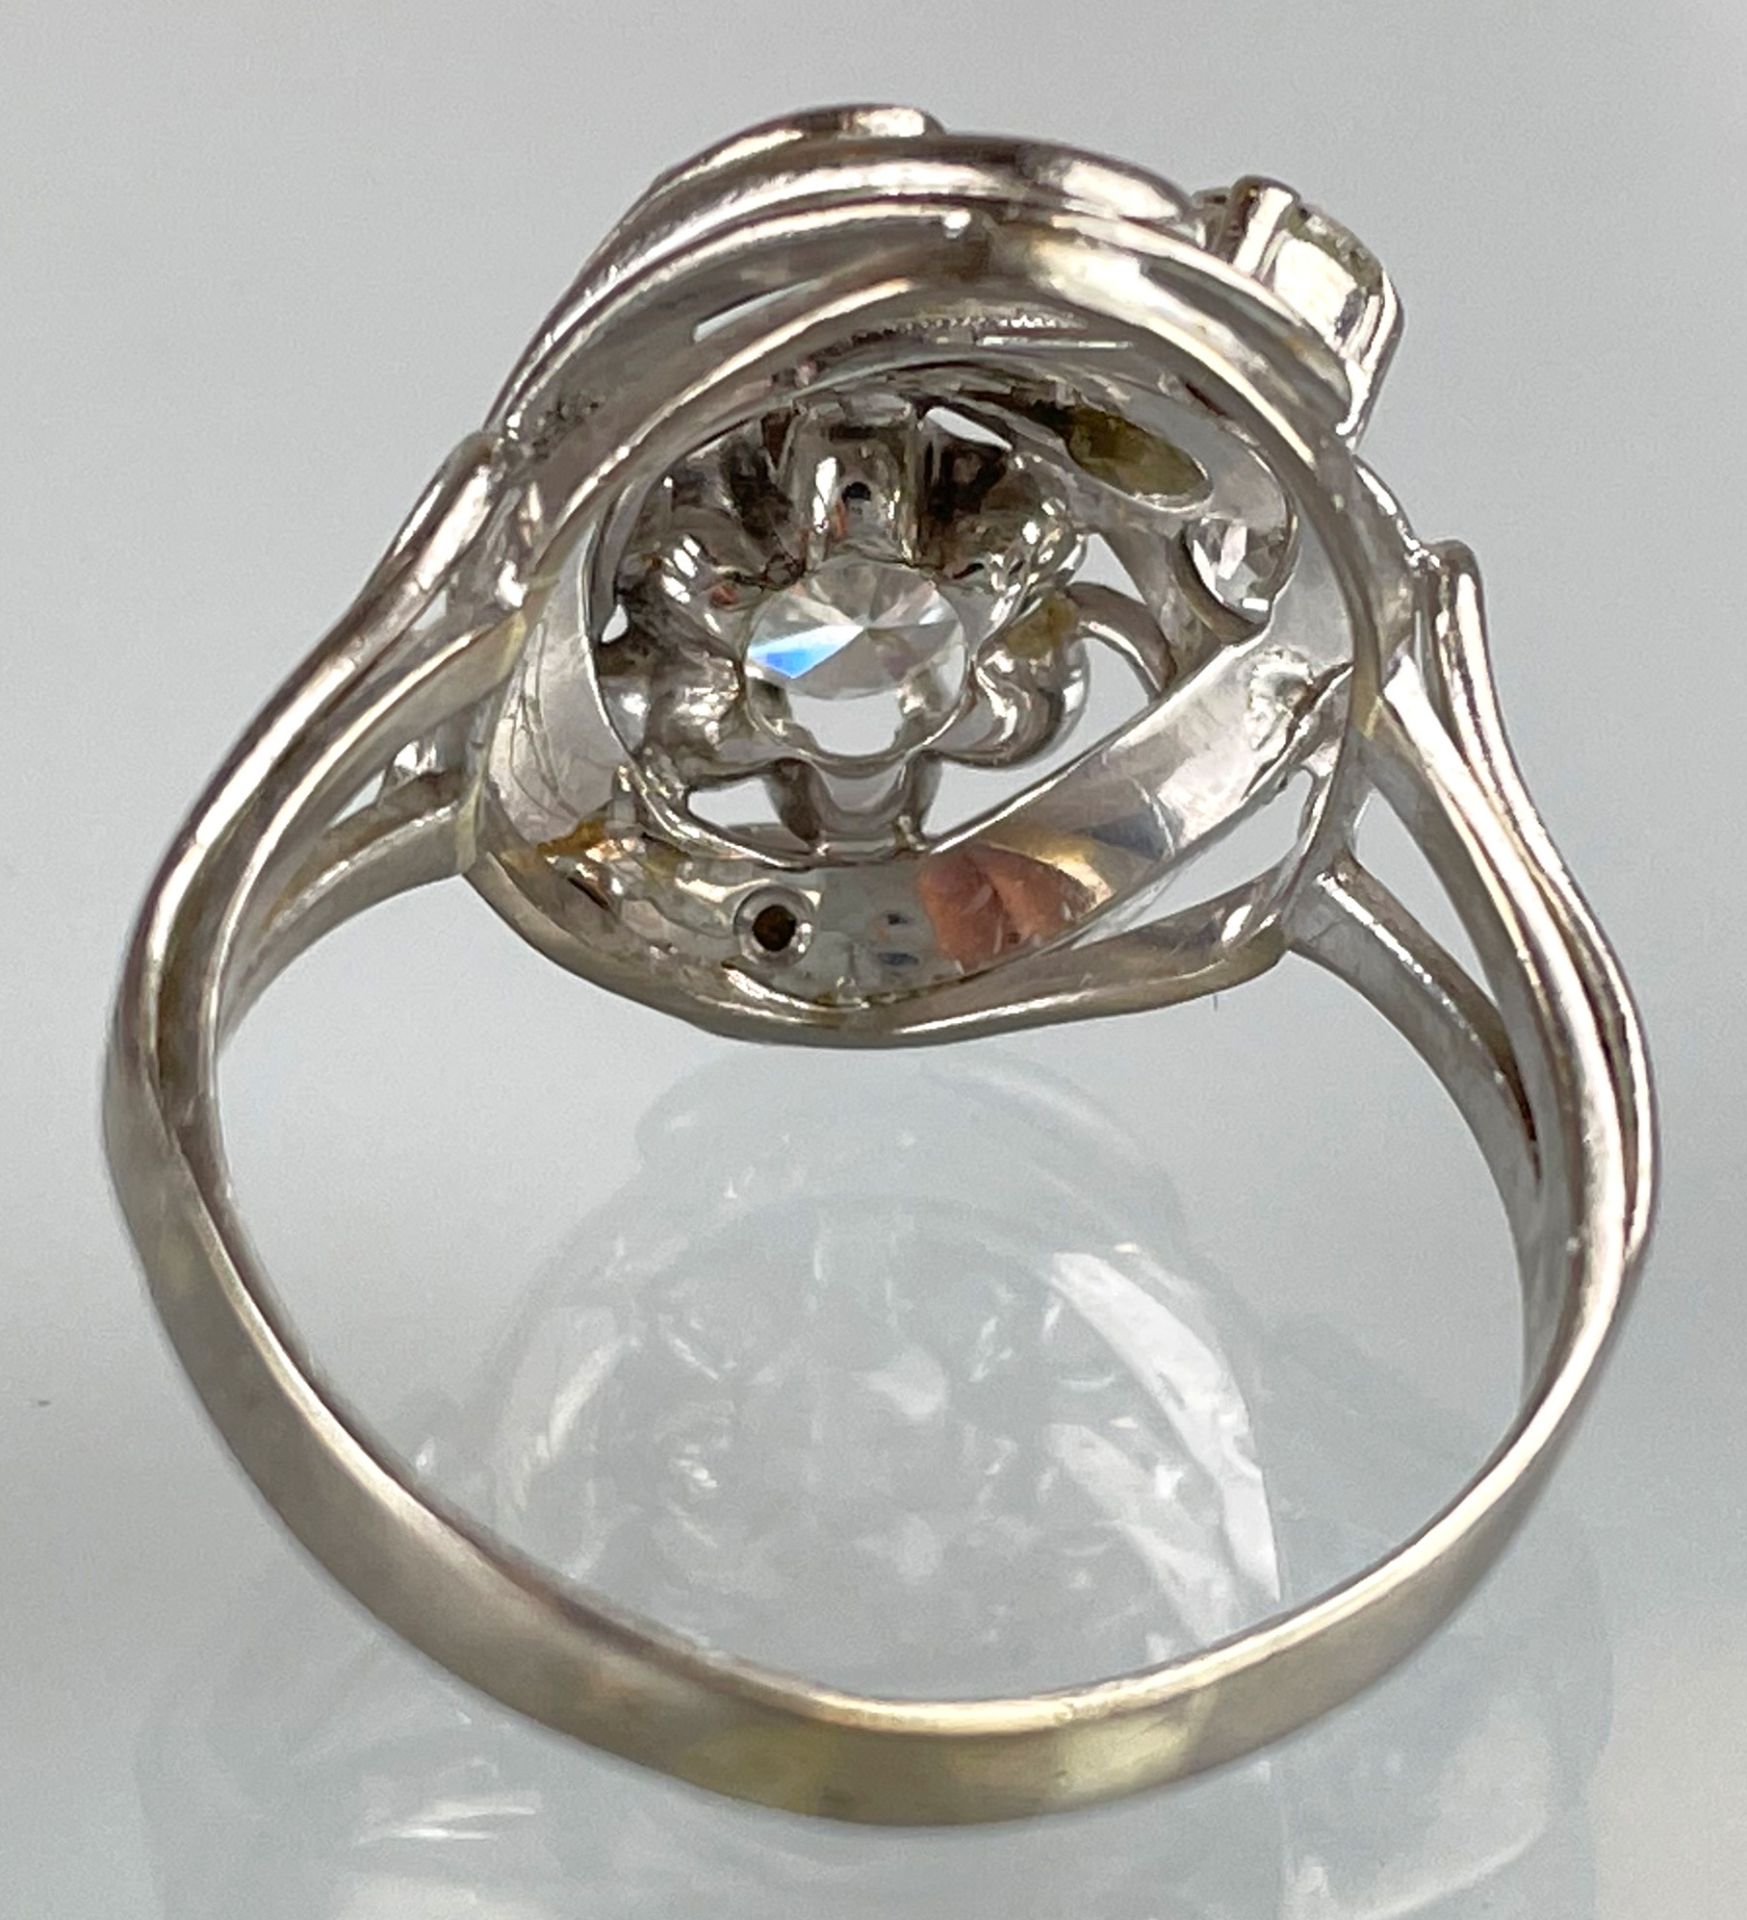 Damenring 750 Weißgold mit Brillanten und kleinen Diamanten. - Image 5 of 9